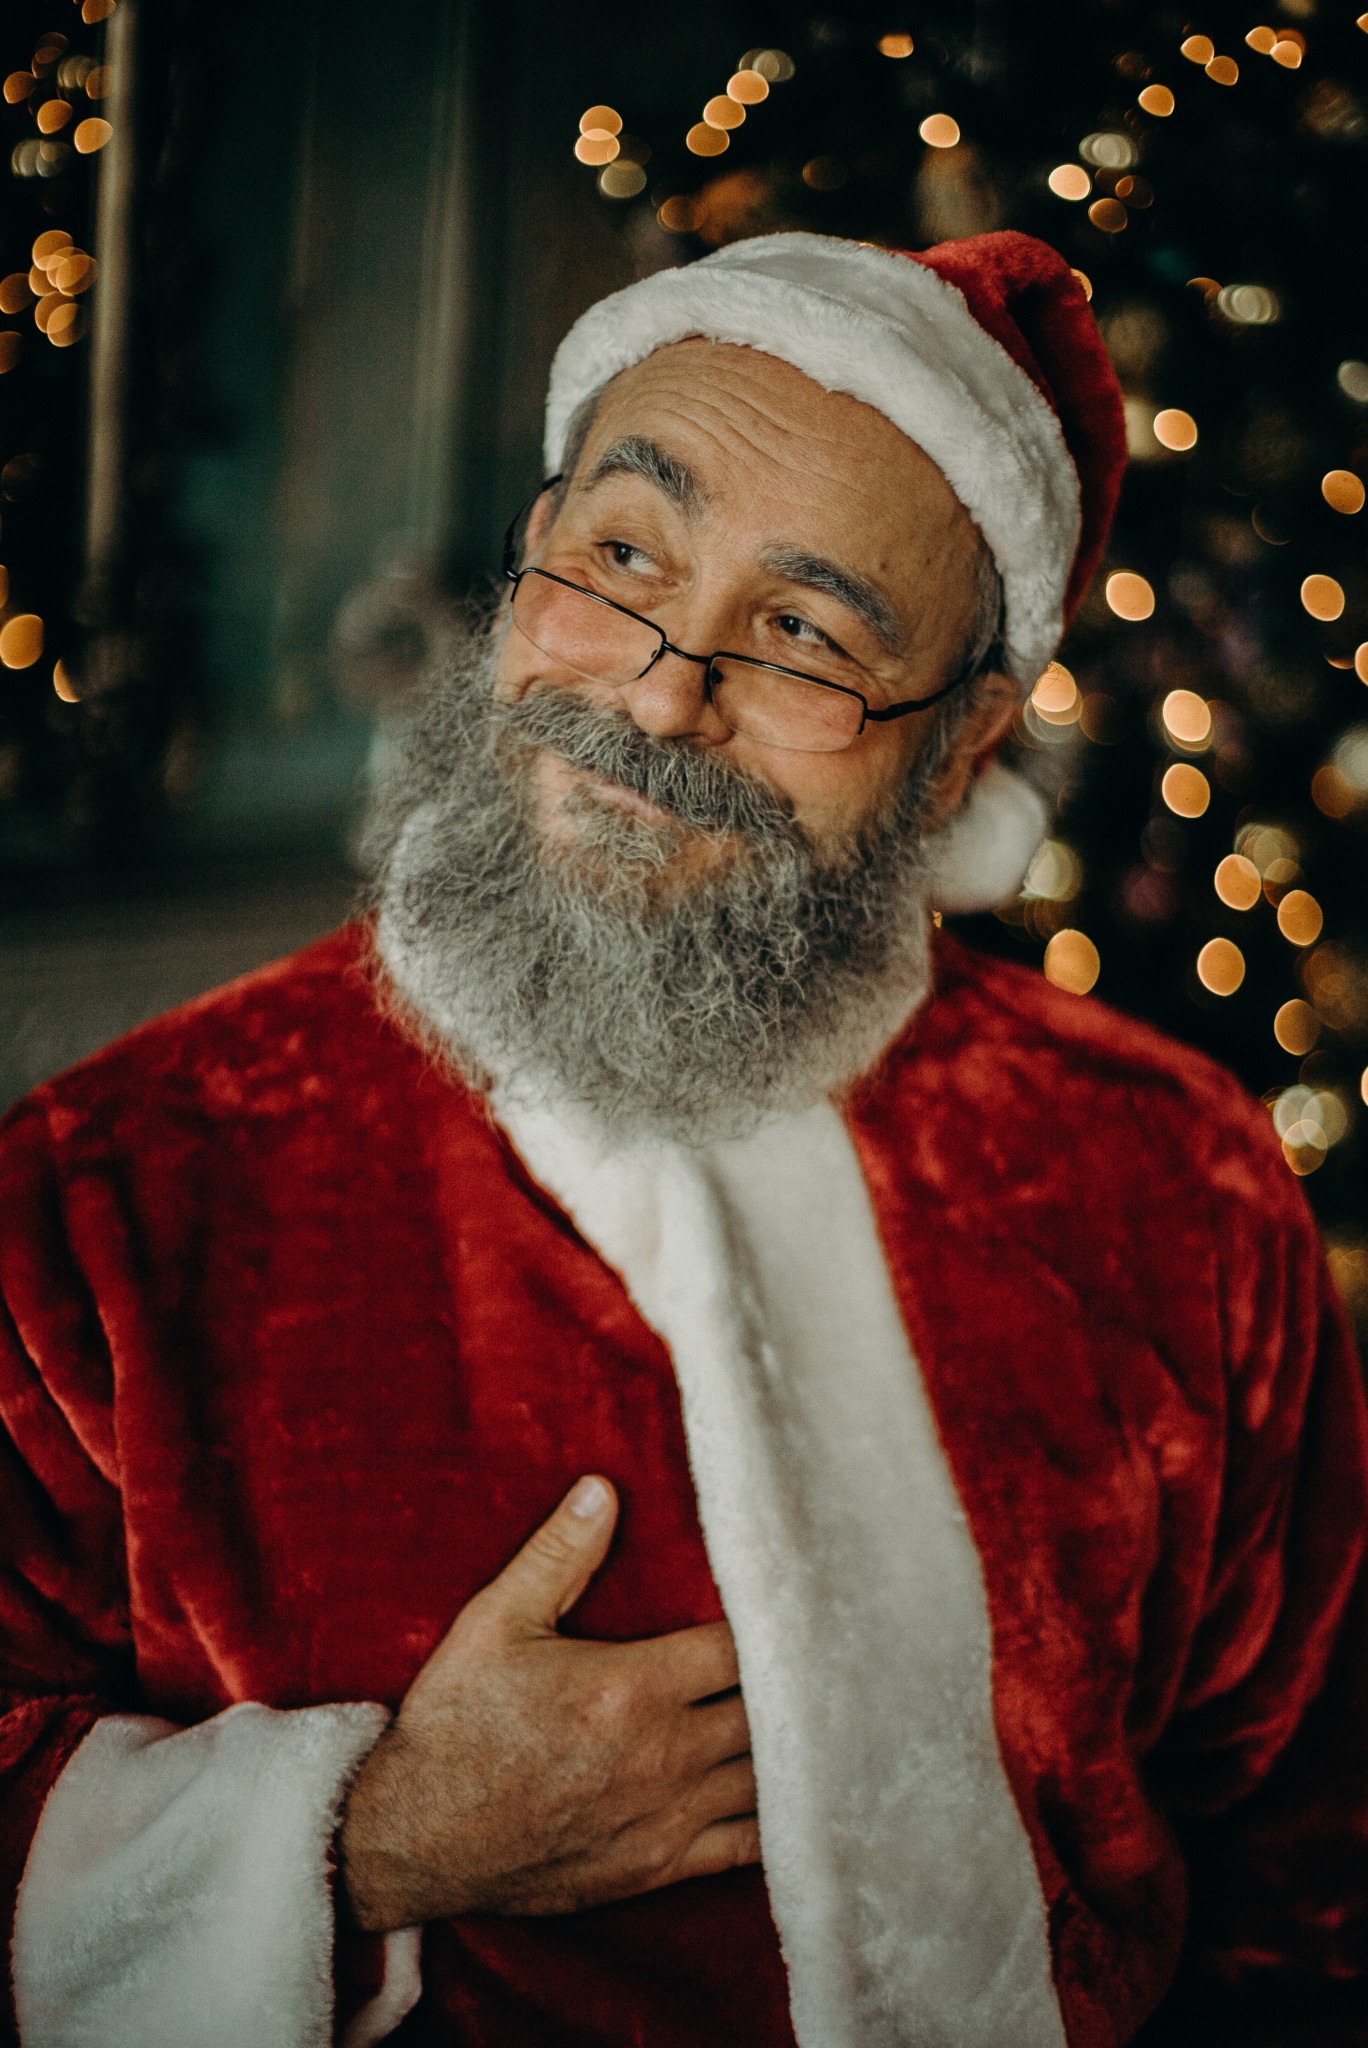 Oferta de empleo: figurantes de Papá Noel para Navidad en Madrid